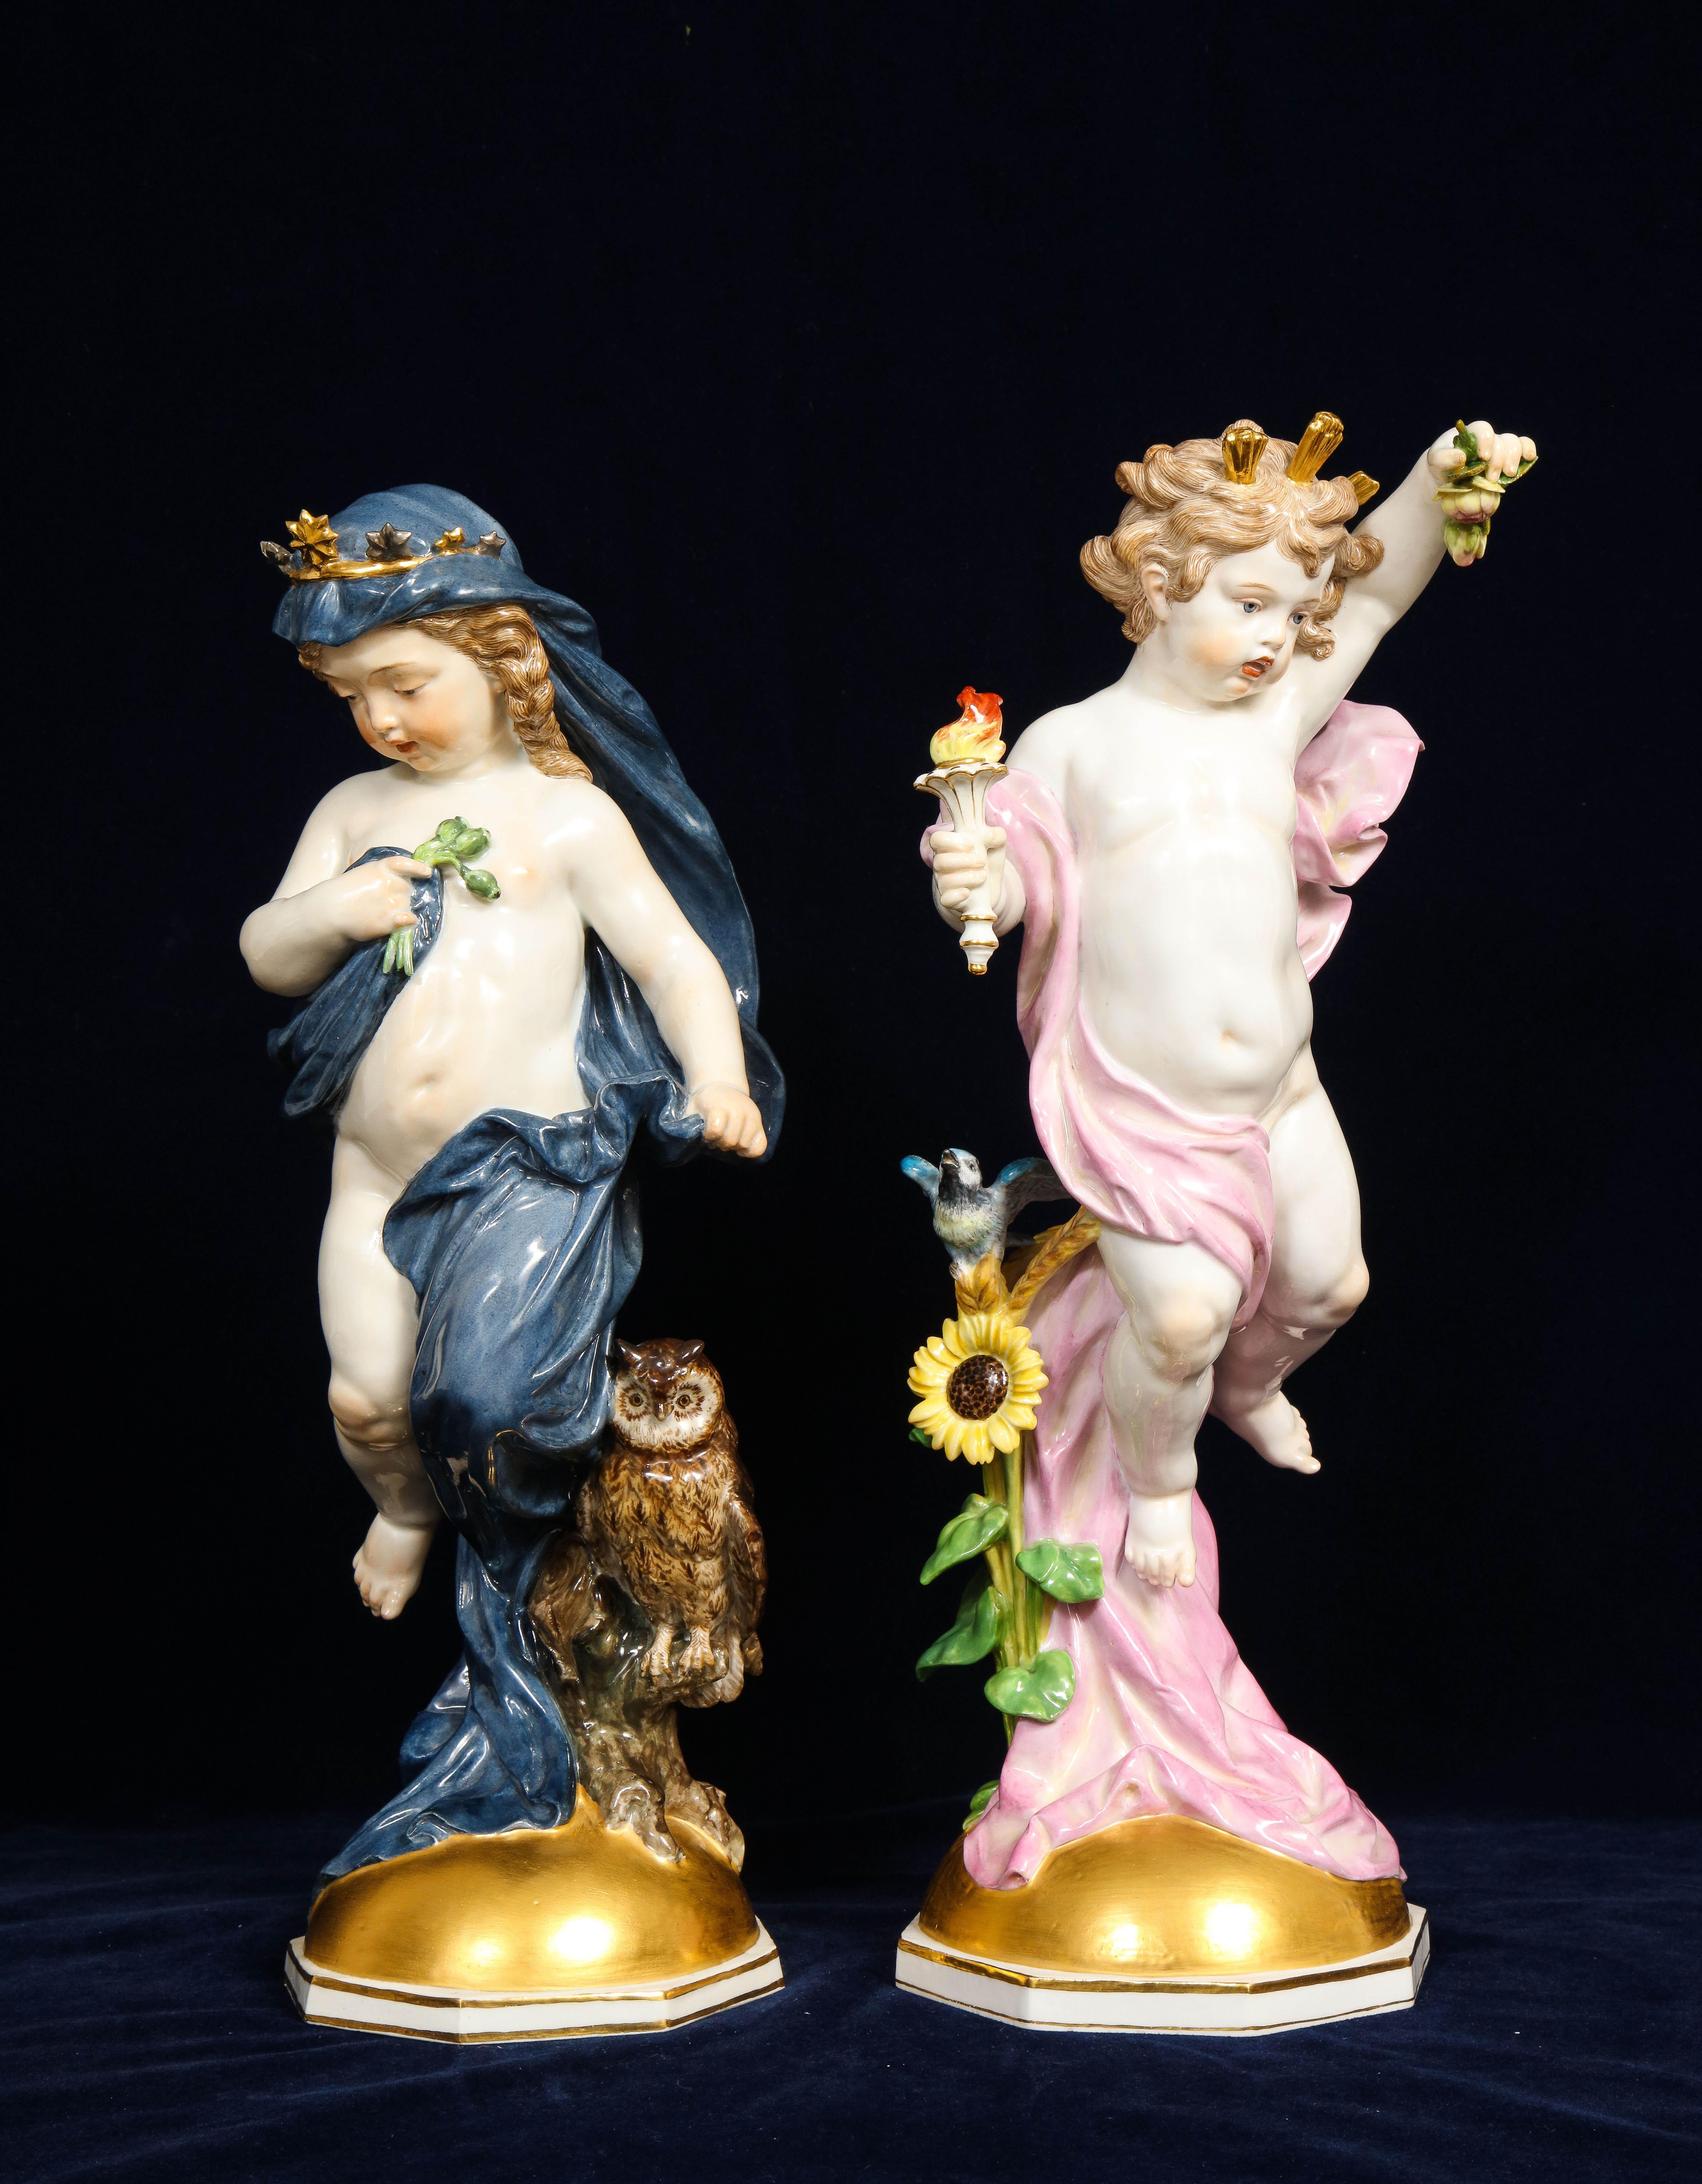 Fantastique et grande paire de figurines de Putti en porcelaine de Meissen du XIXe siècle, représentant le jour et la nuit. Chacune est magnifiquement sculptée et peinte à la main par les meilleurs artistes de Meissen. Elles sont toutes deux